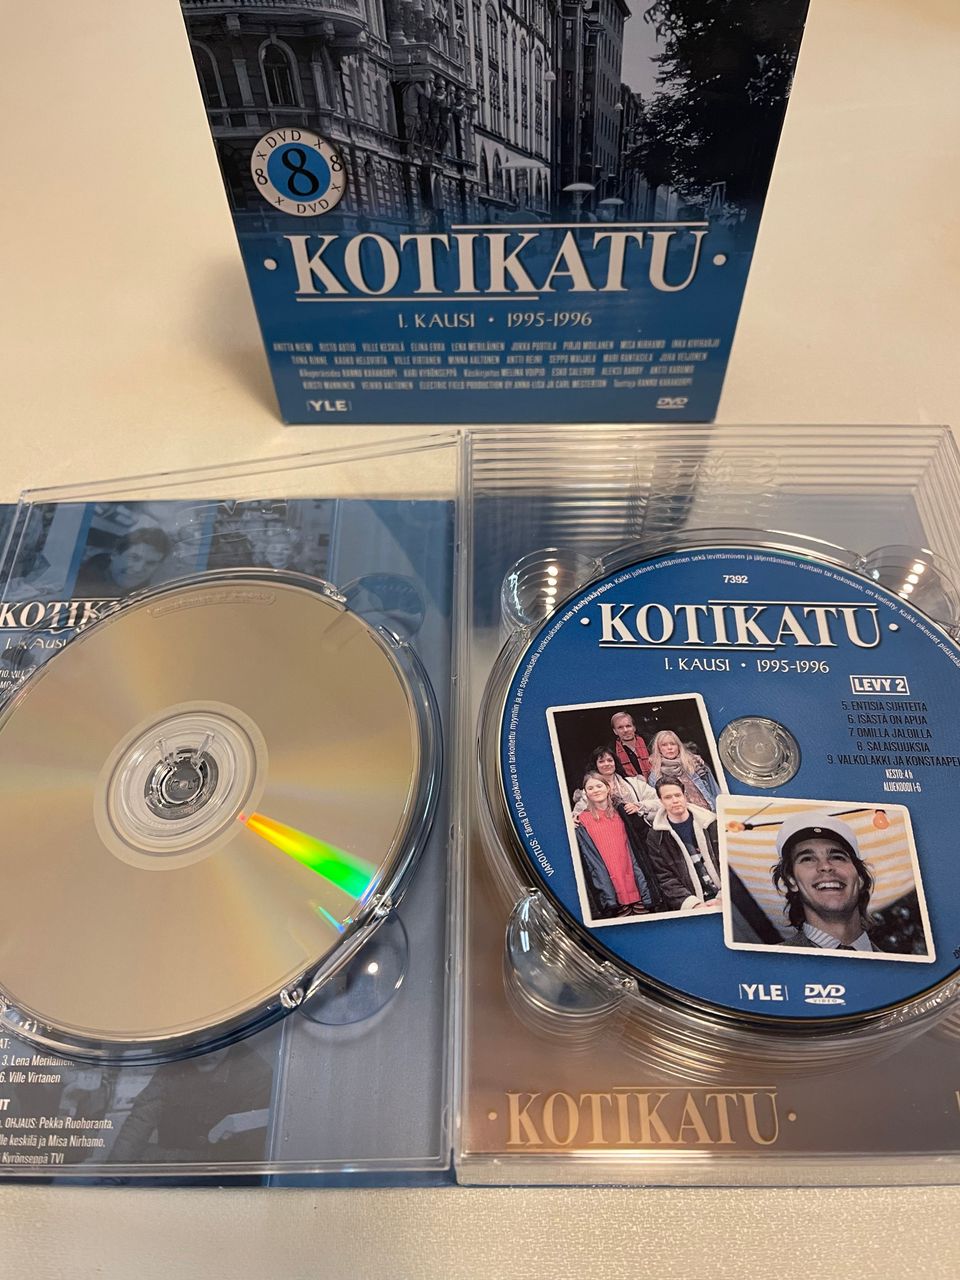 Kotikatu - 1. kausi (8 x DVD)